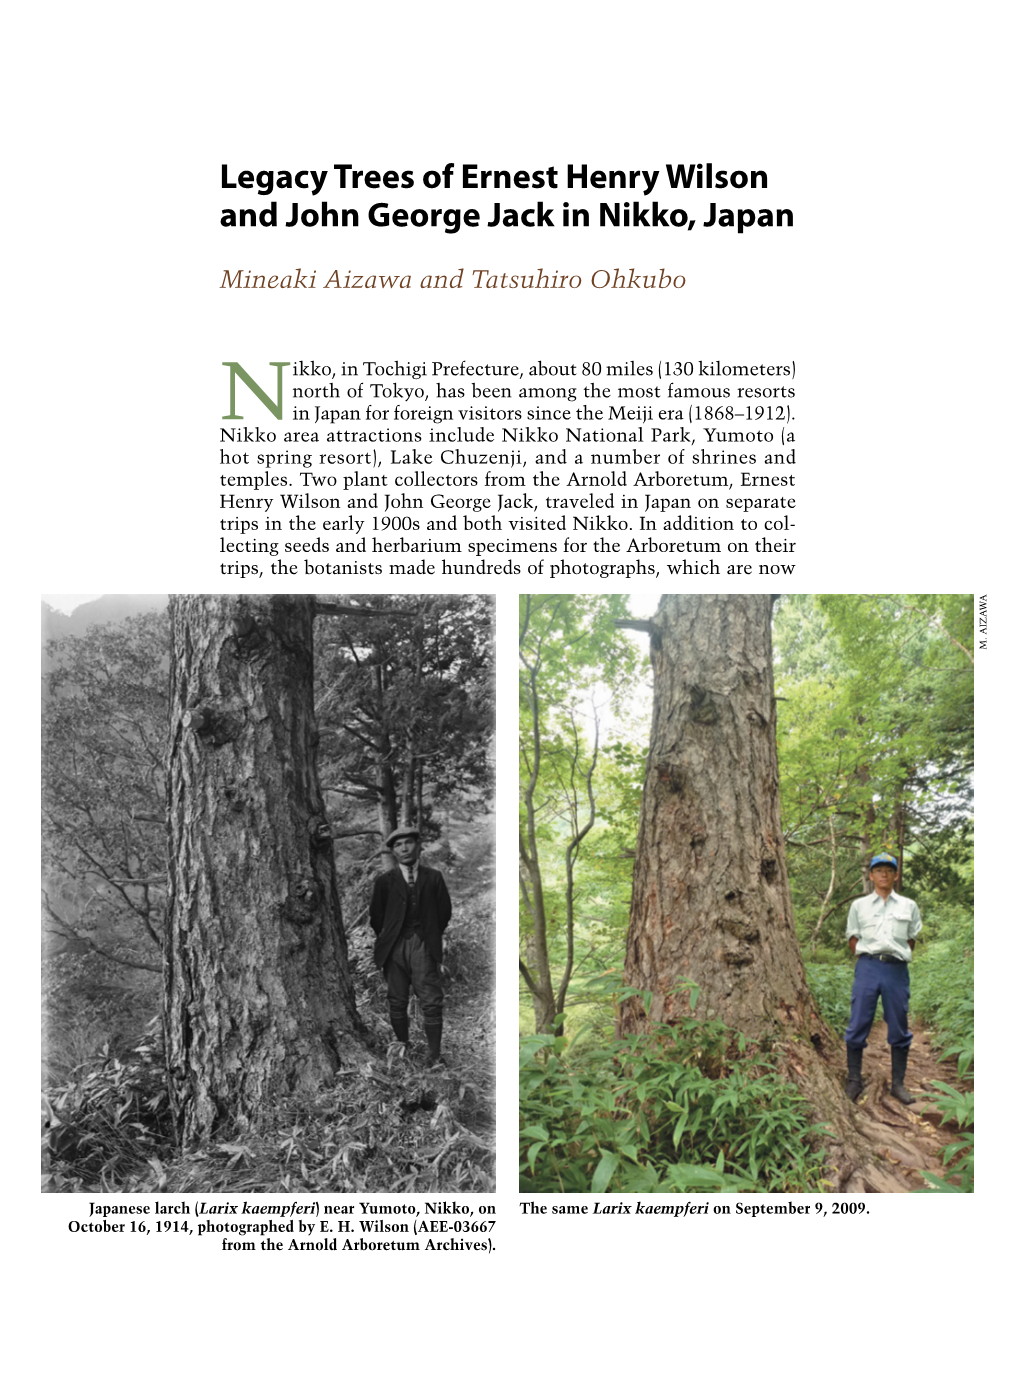 Legacy Trees of Ernest Henry Wilson and John George Jack in Nikko, Japan